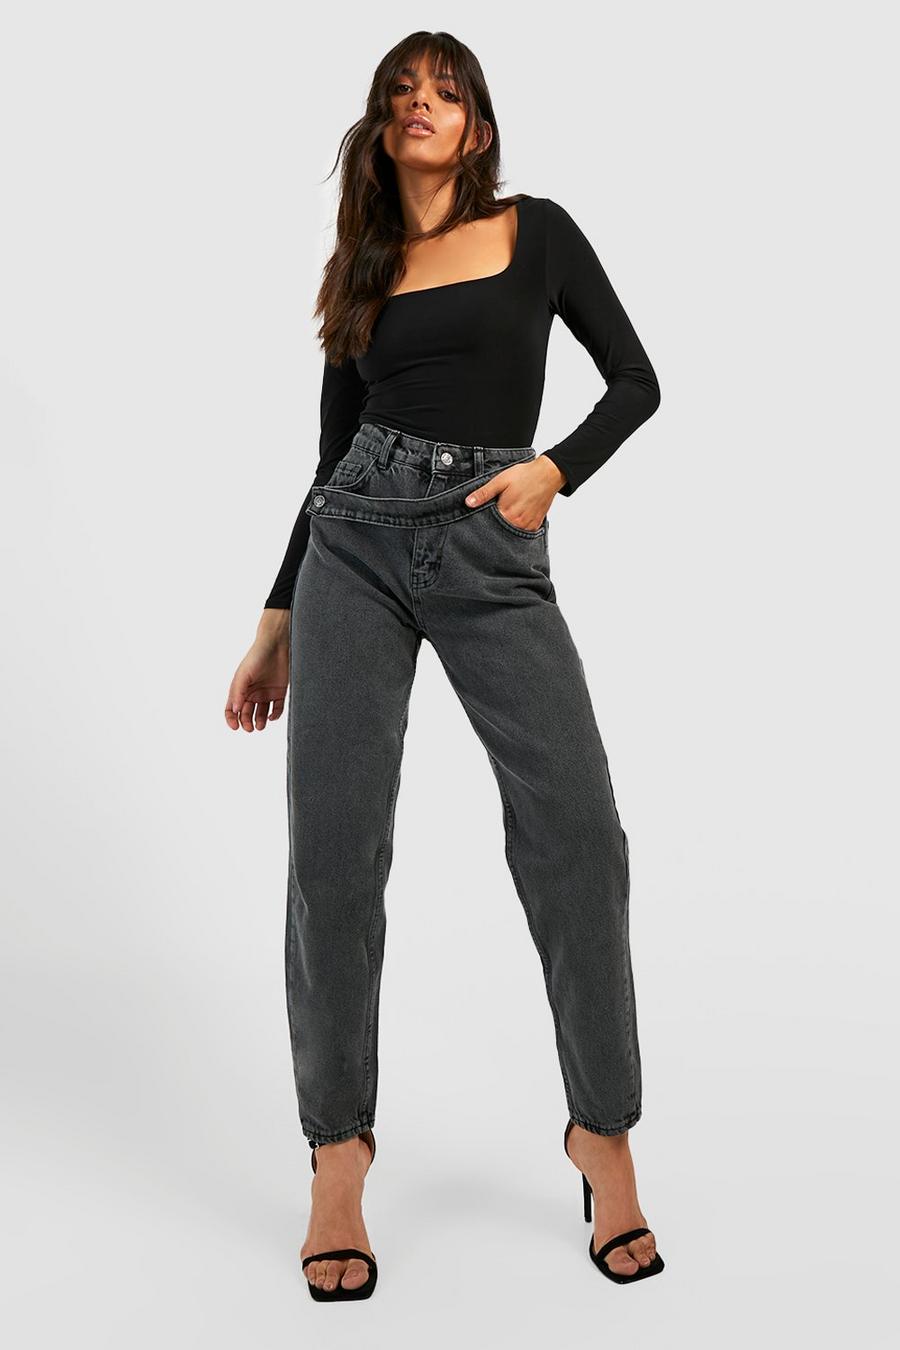 שחור דהוי ג'ינס מאם א-סימטרי בגזרה גבוהה עם חגורה